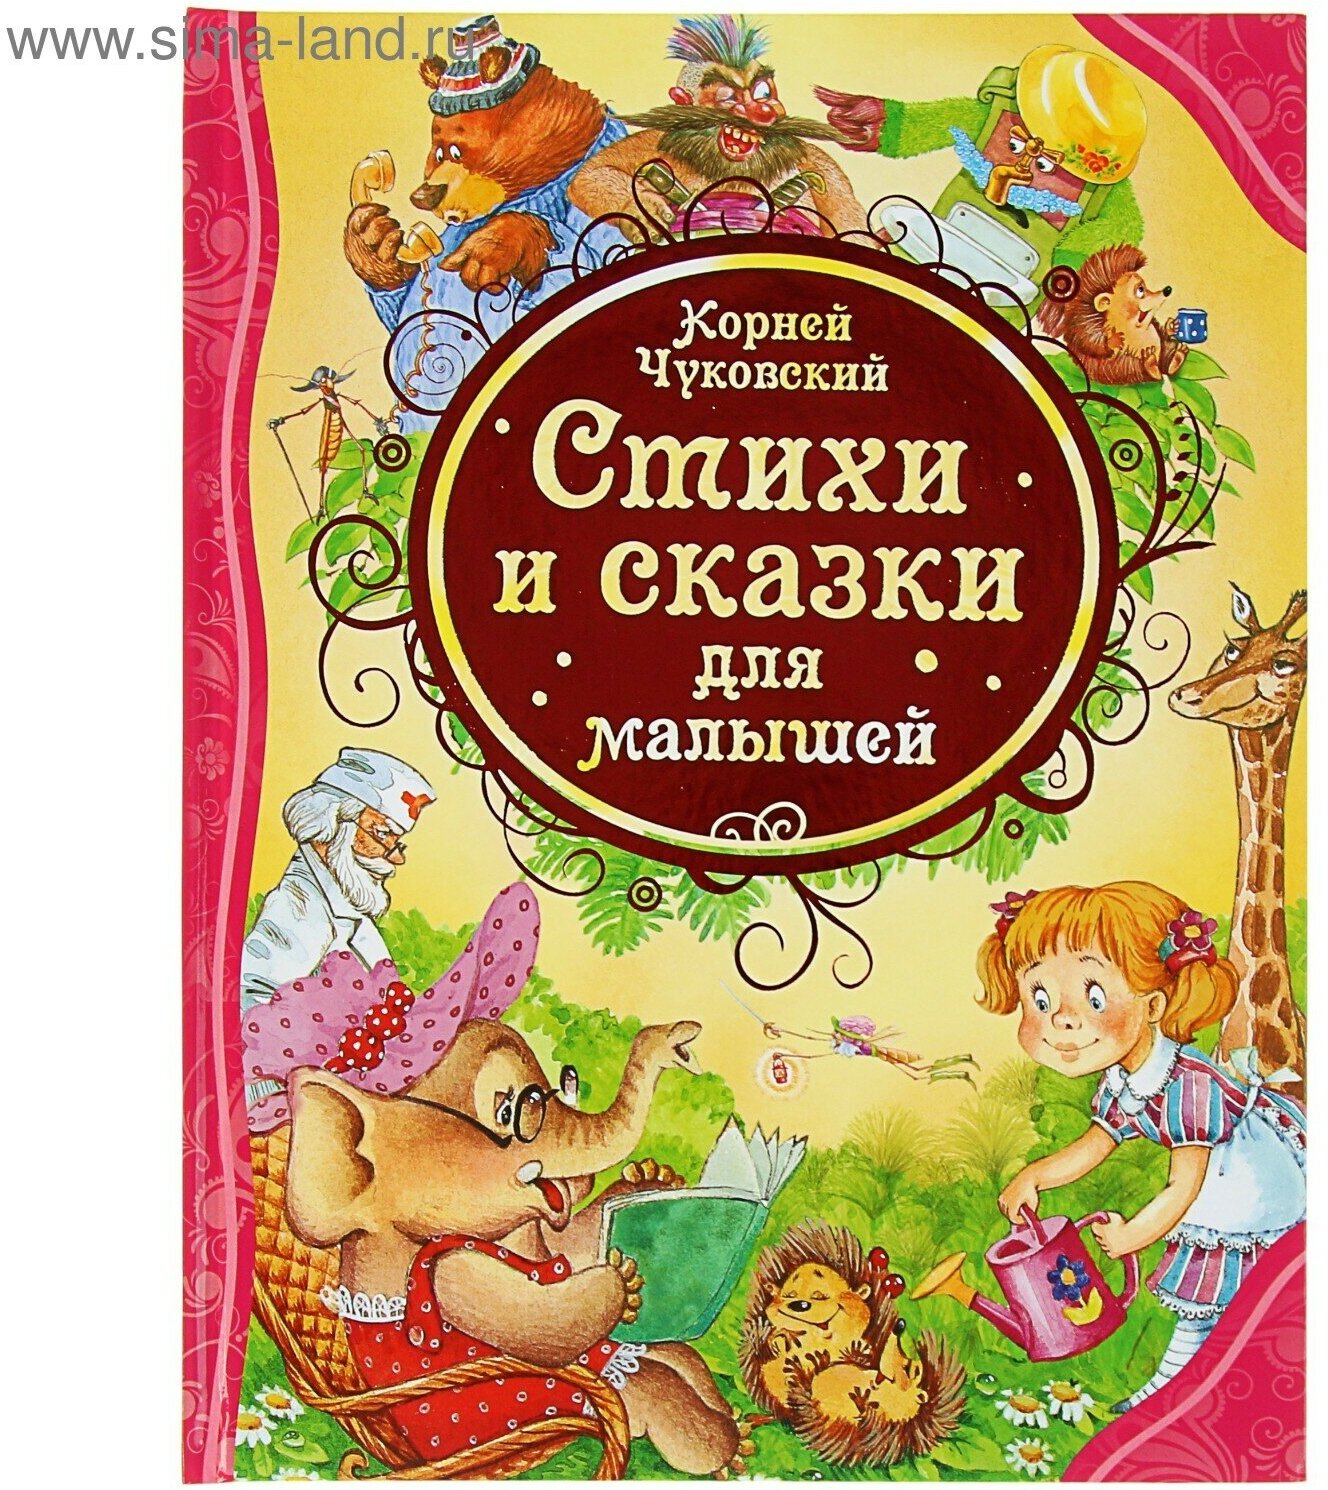 «Стихи и сказки для малышей», Чуковский К. И.